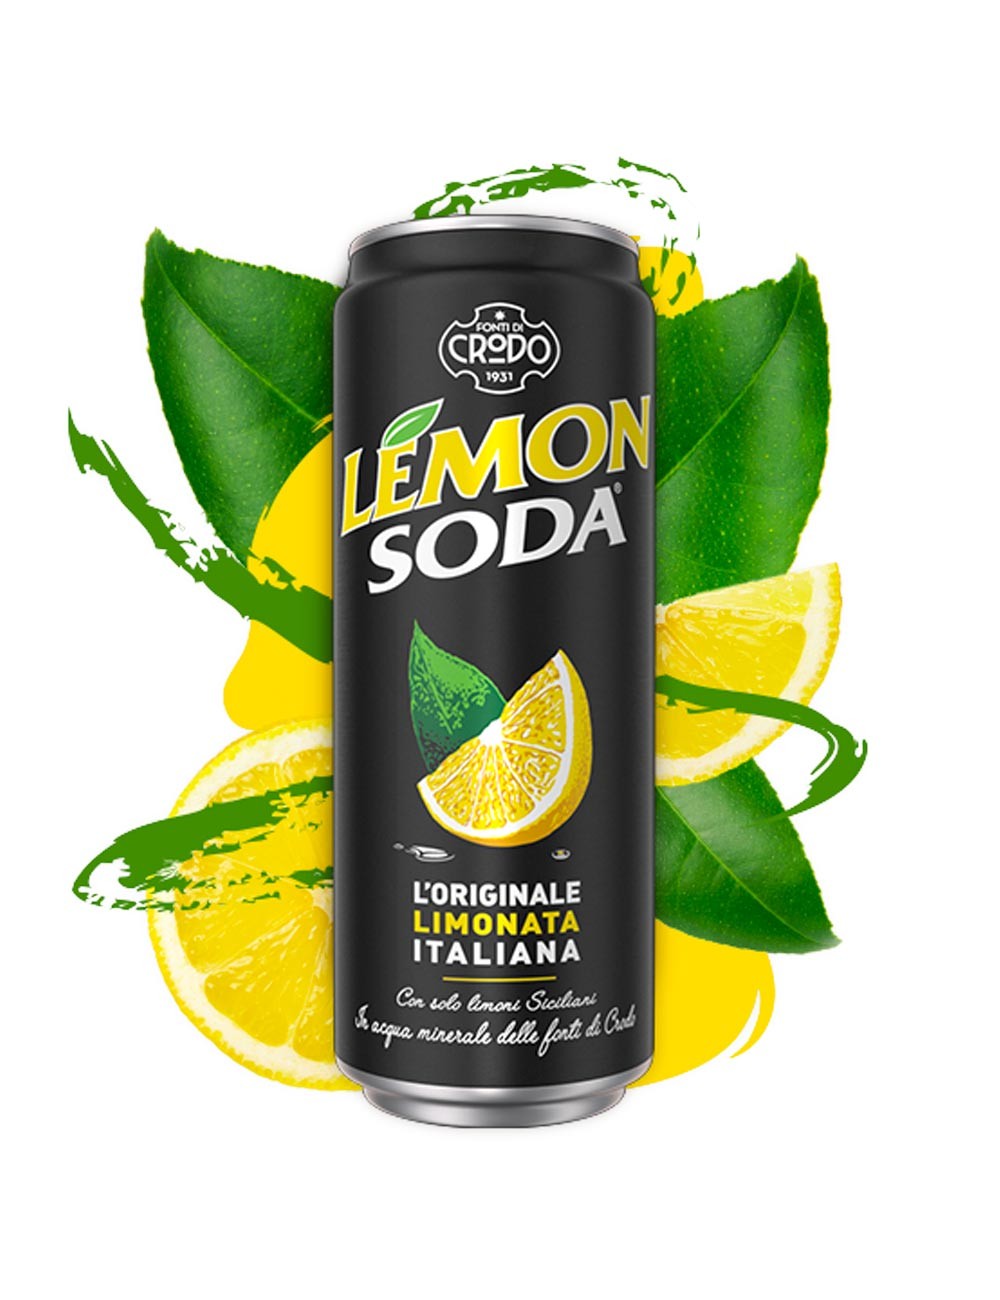 Lemonsoda can sleek 24 x 33 cl